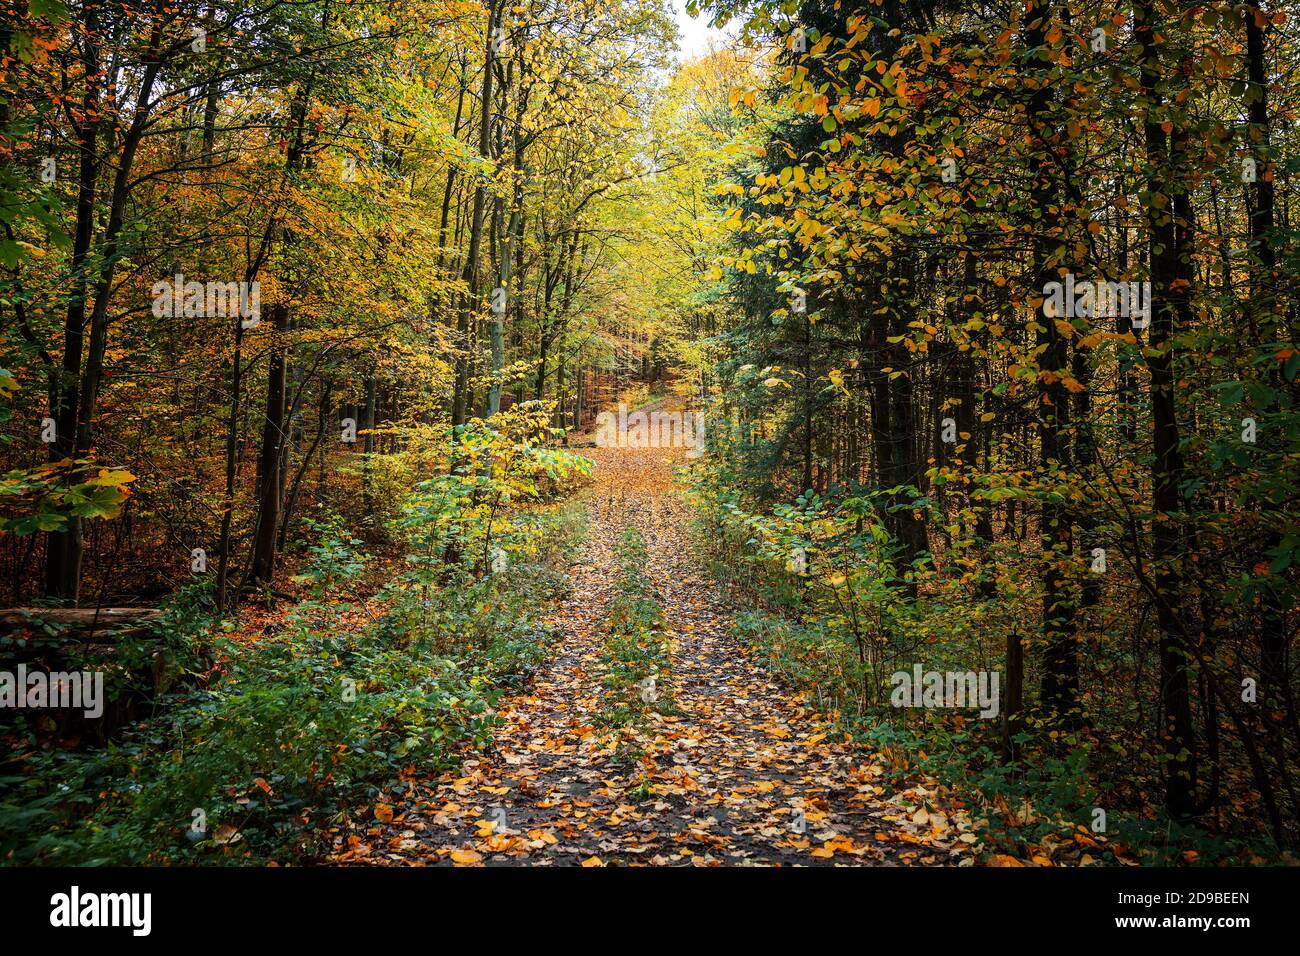 Sentiero attraverso una foresta mista in autunno con colorate foglie d'autunno, paesaggio stagionale nella bella natura, fuoco selezionato Foto Stock